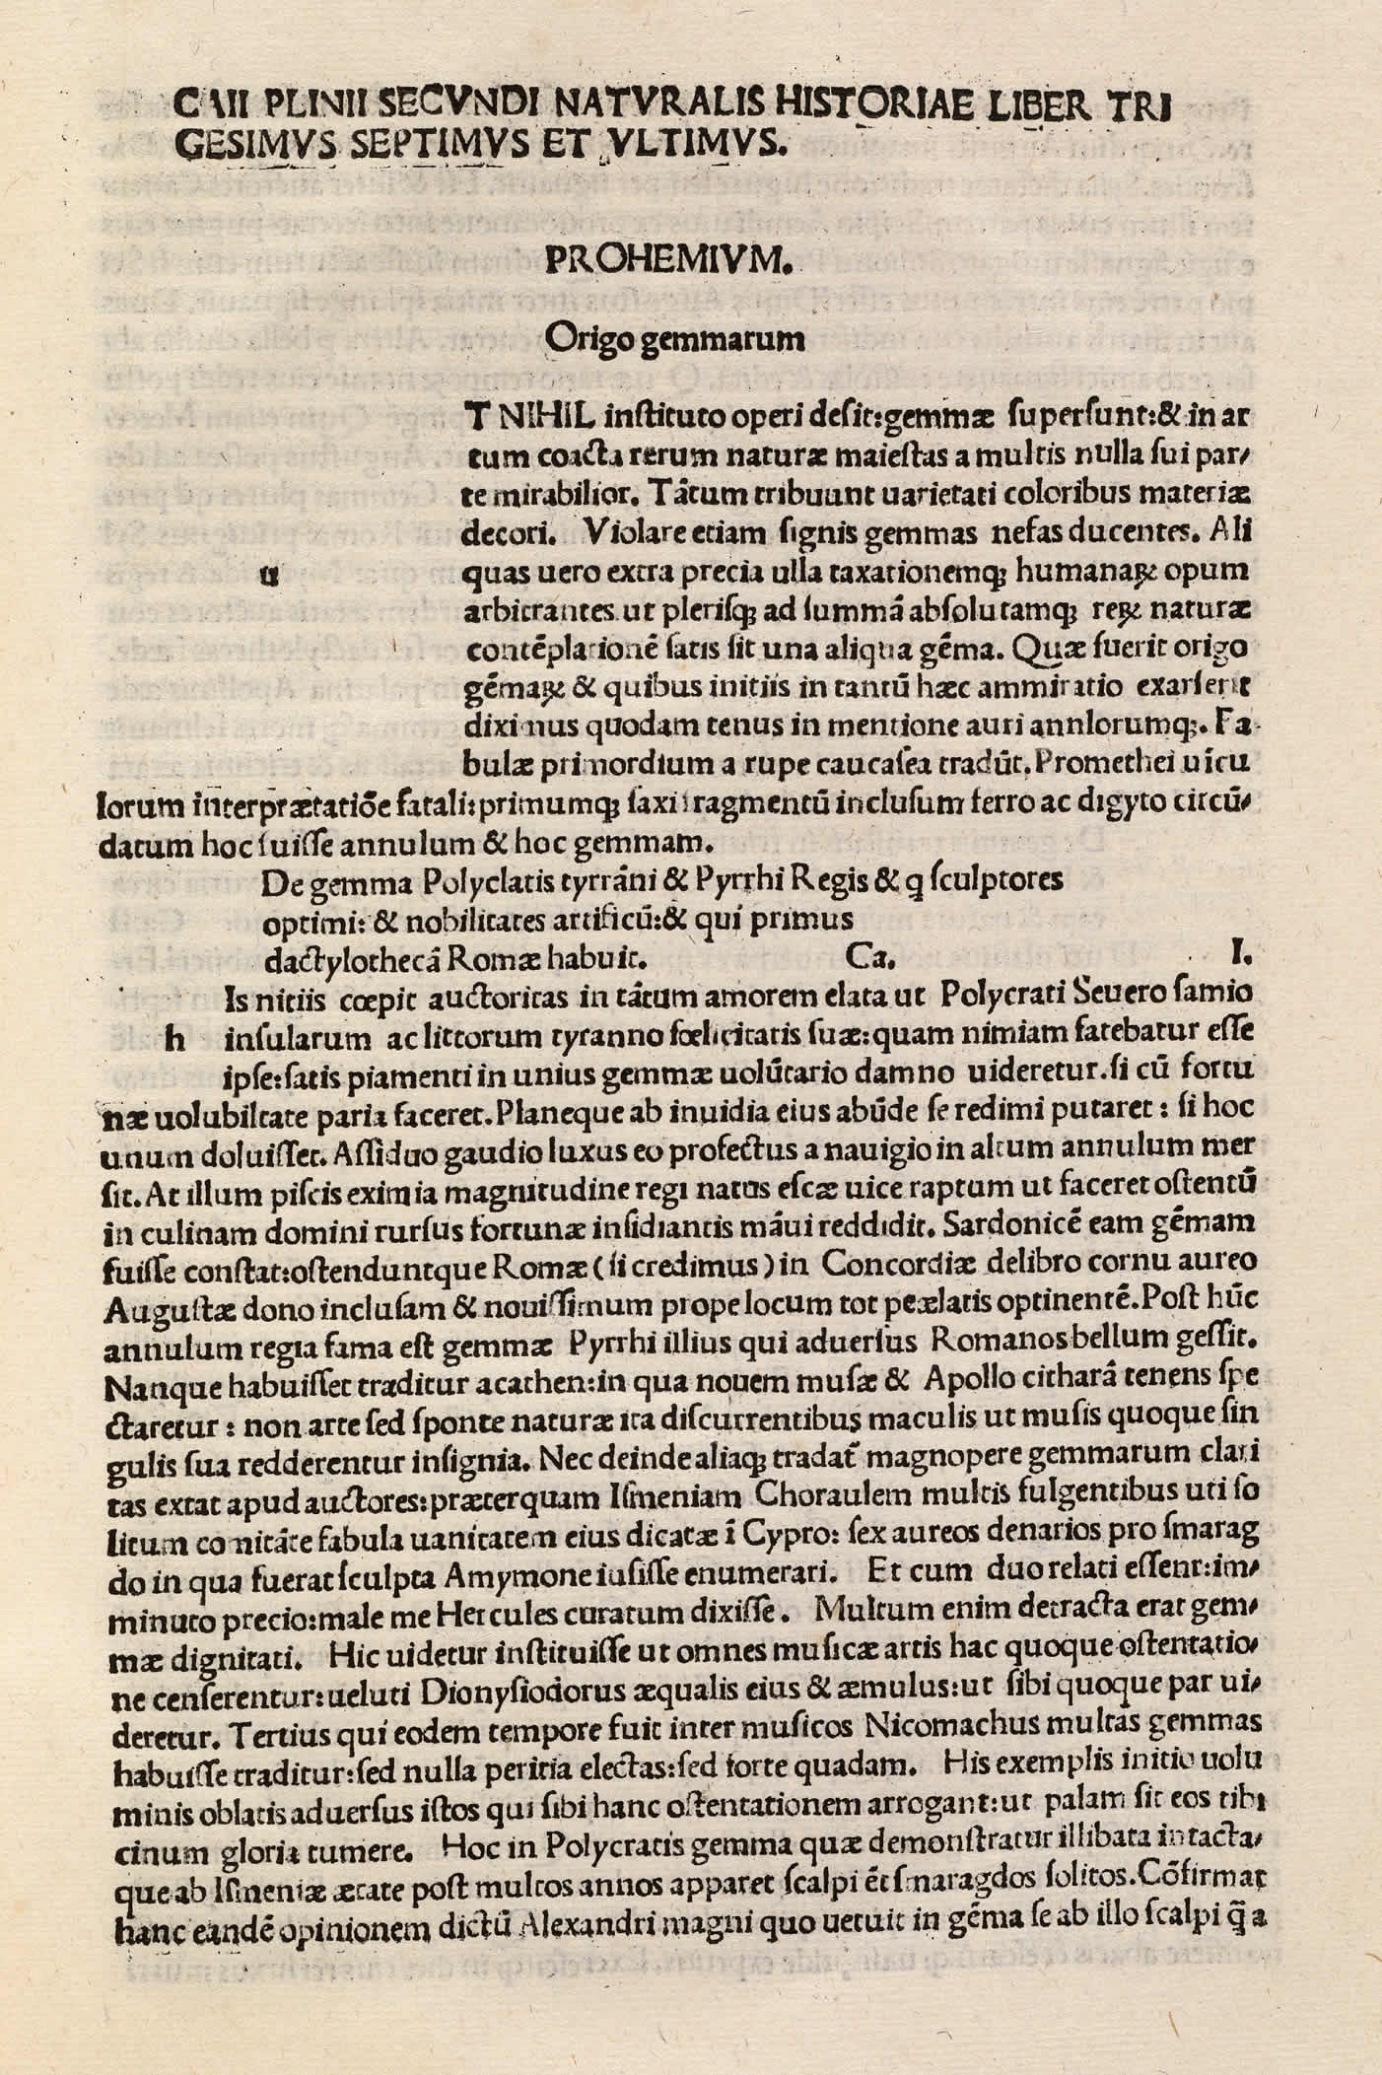 Image 2 from GAIUS PLINIUS SECUNDUS. (23 - 79 A.D.). Naturalis Historiae. Venice: Rainaldi de Nouimagio, 1483.